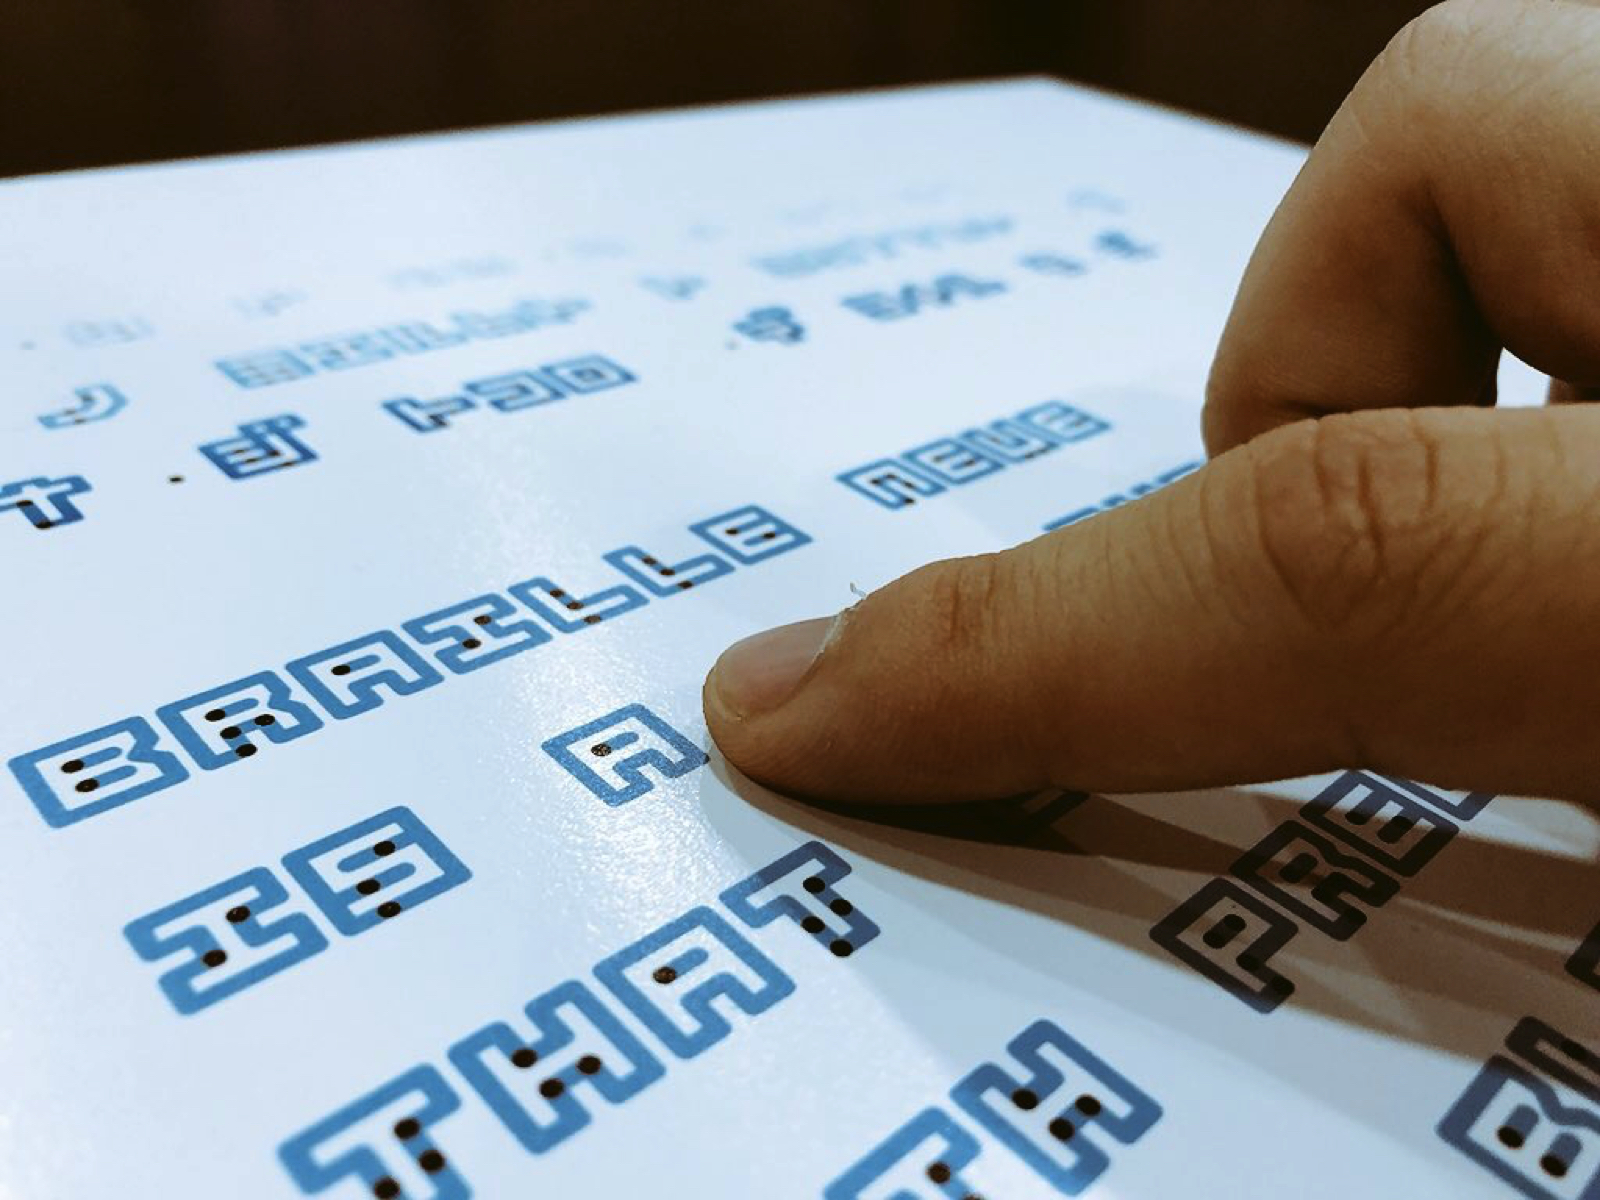 Ce designer a créé une police qui combine braille et écriture traditionnelle